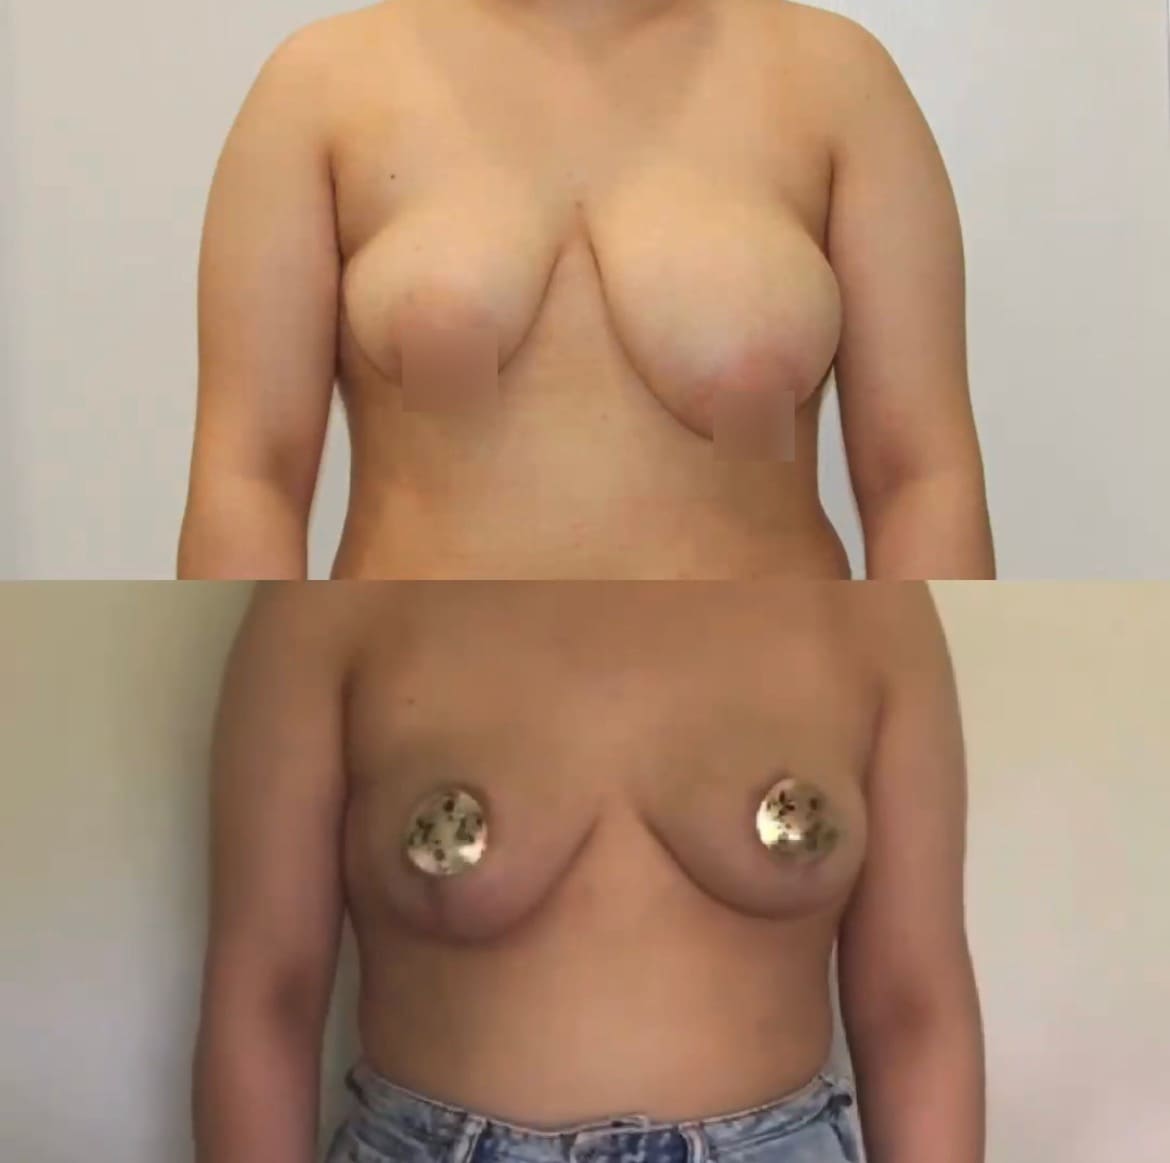 Редукция молочной железы (уменьшение) - фото до и после